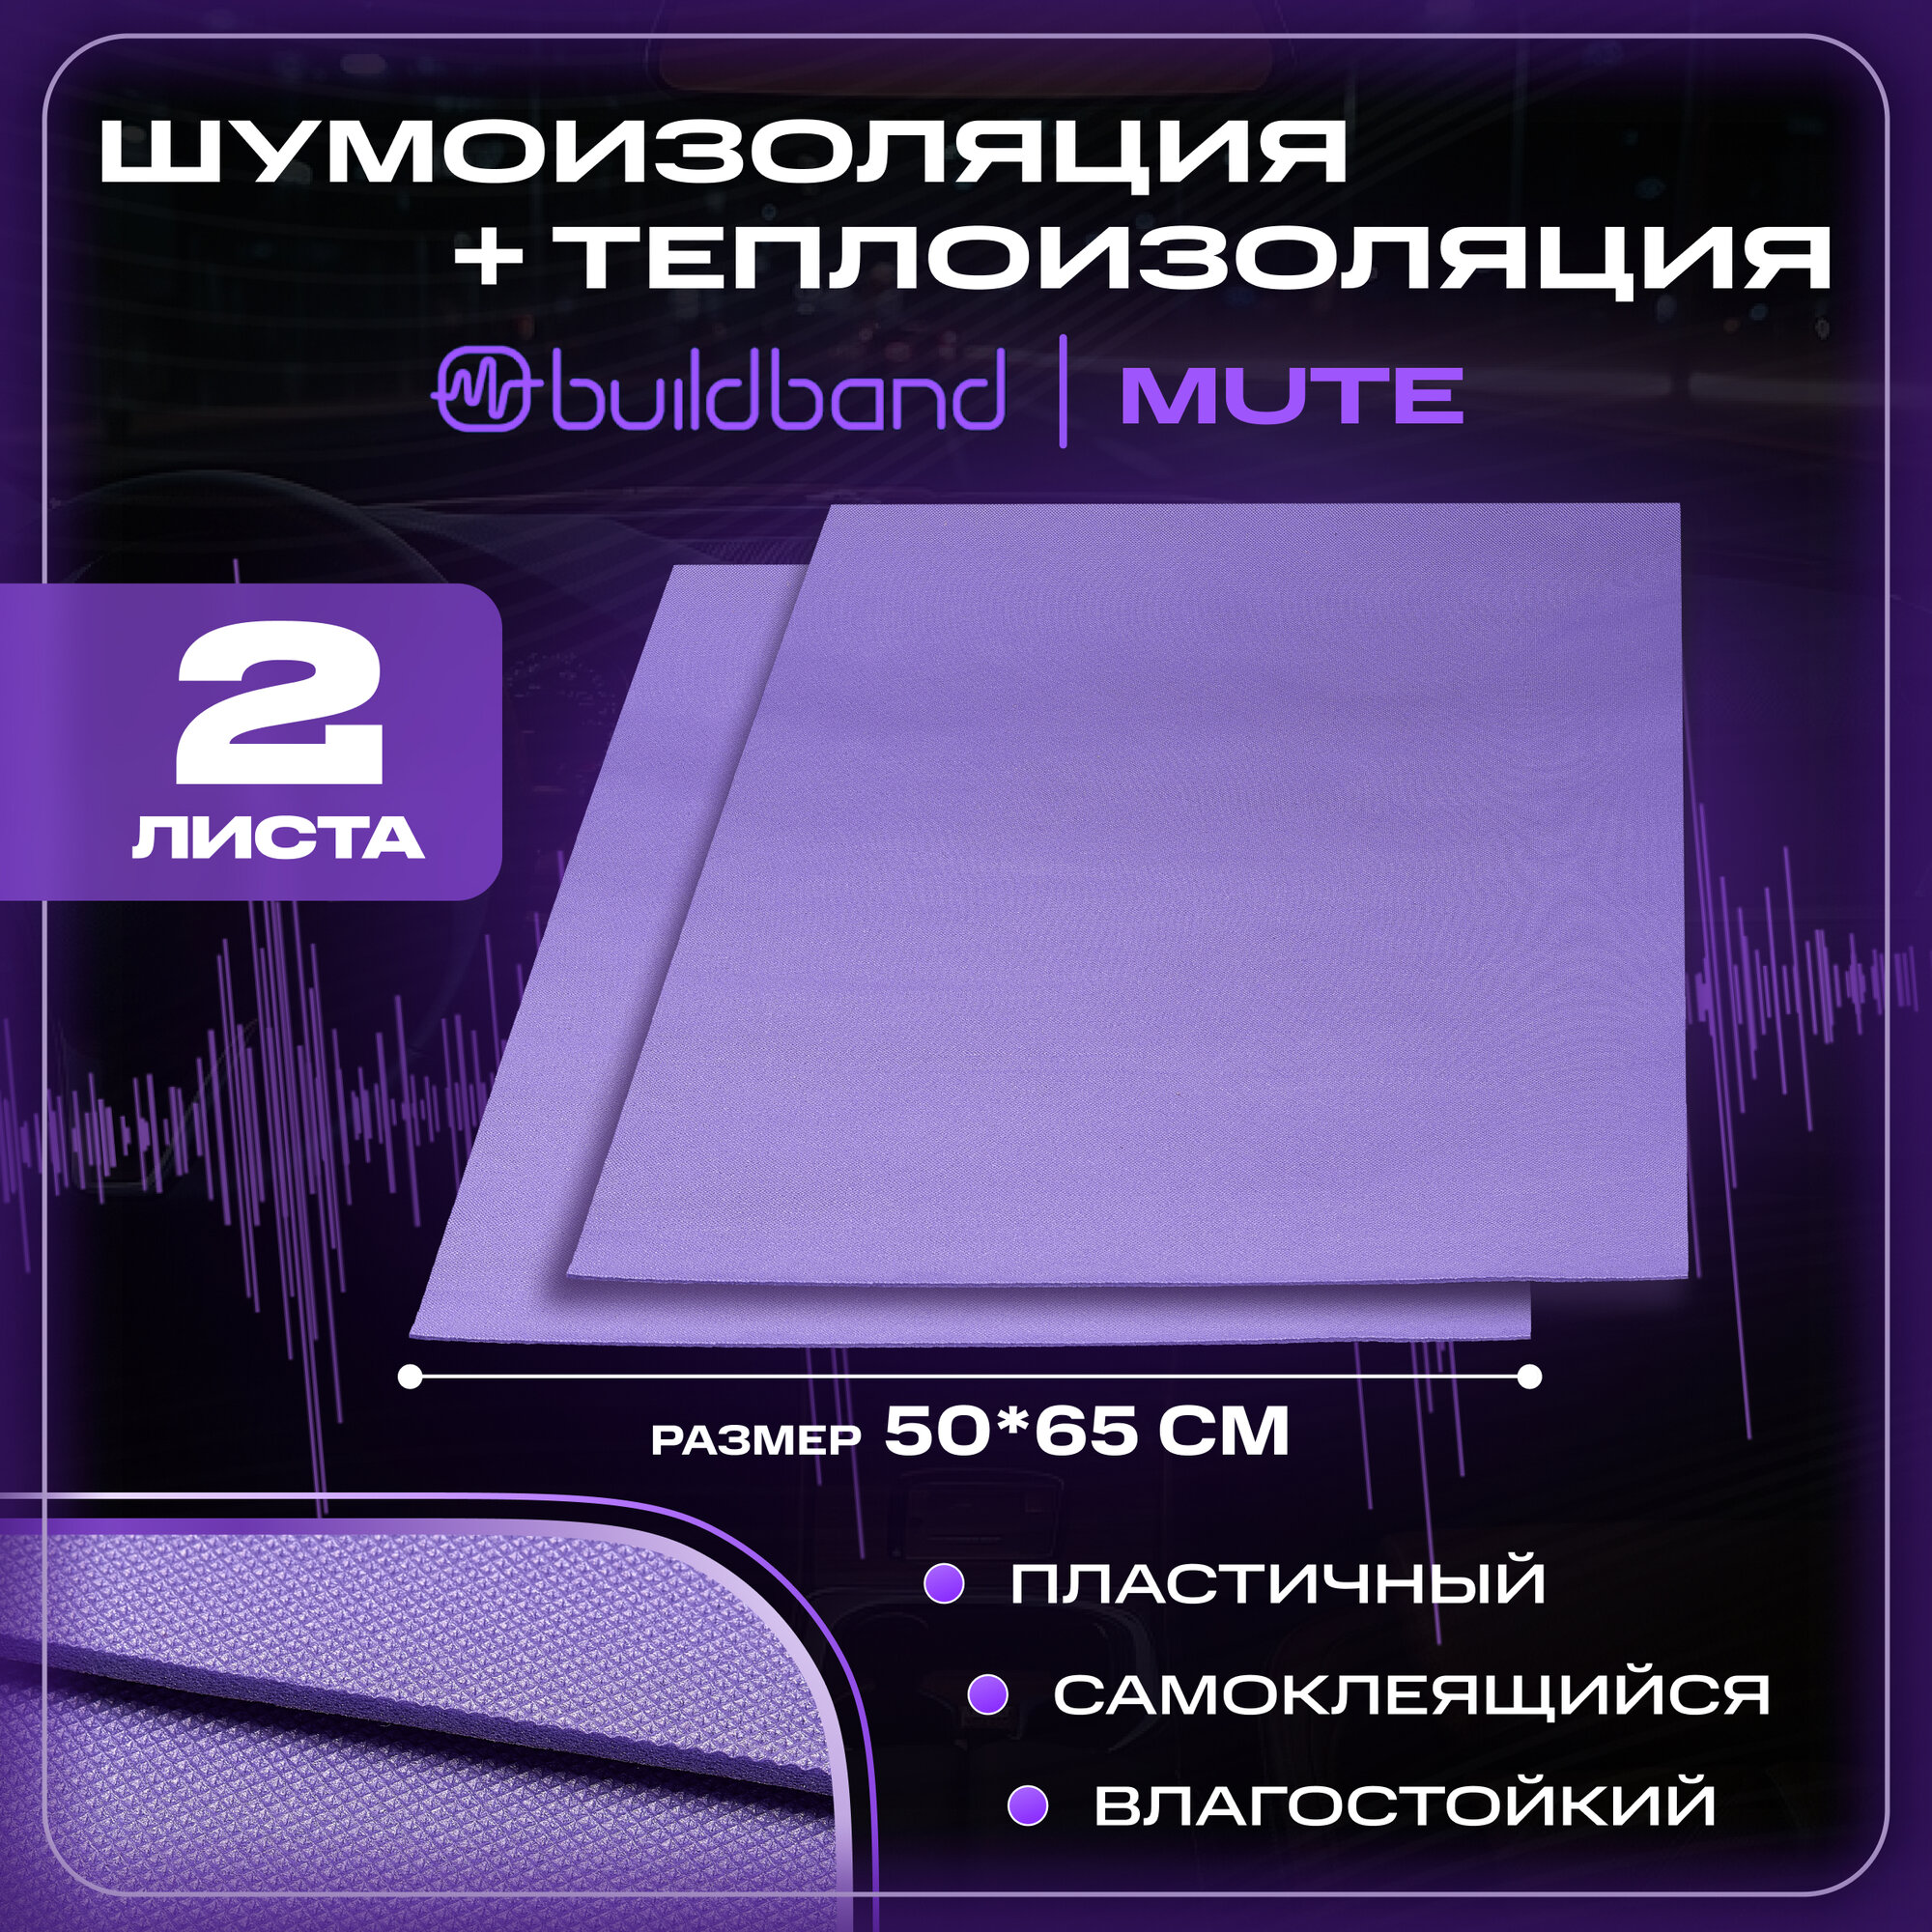 Шумоизоляция для автомобиля buildband MUTE, 2 листа (65х50 см) /Набор влагостойкой звукоизоляции с теплоизолятором/комплект самоклеящаяся шумка для авто